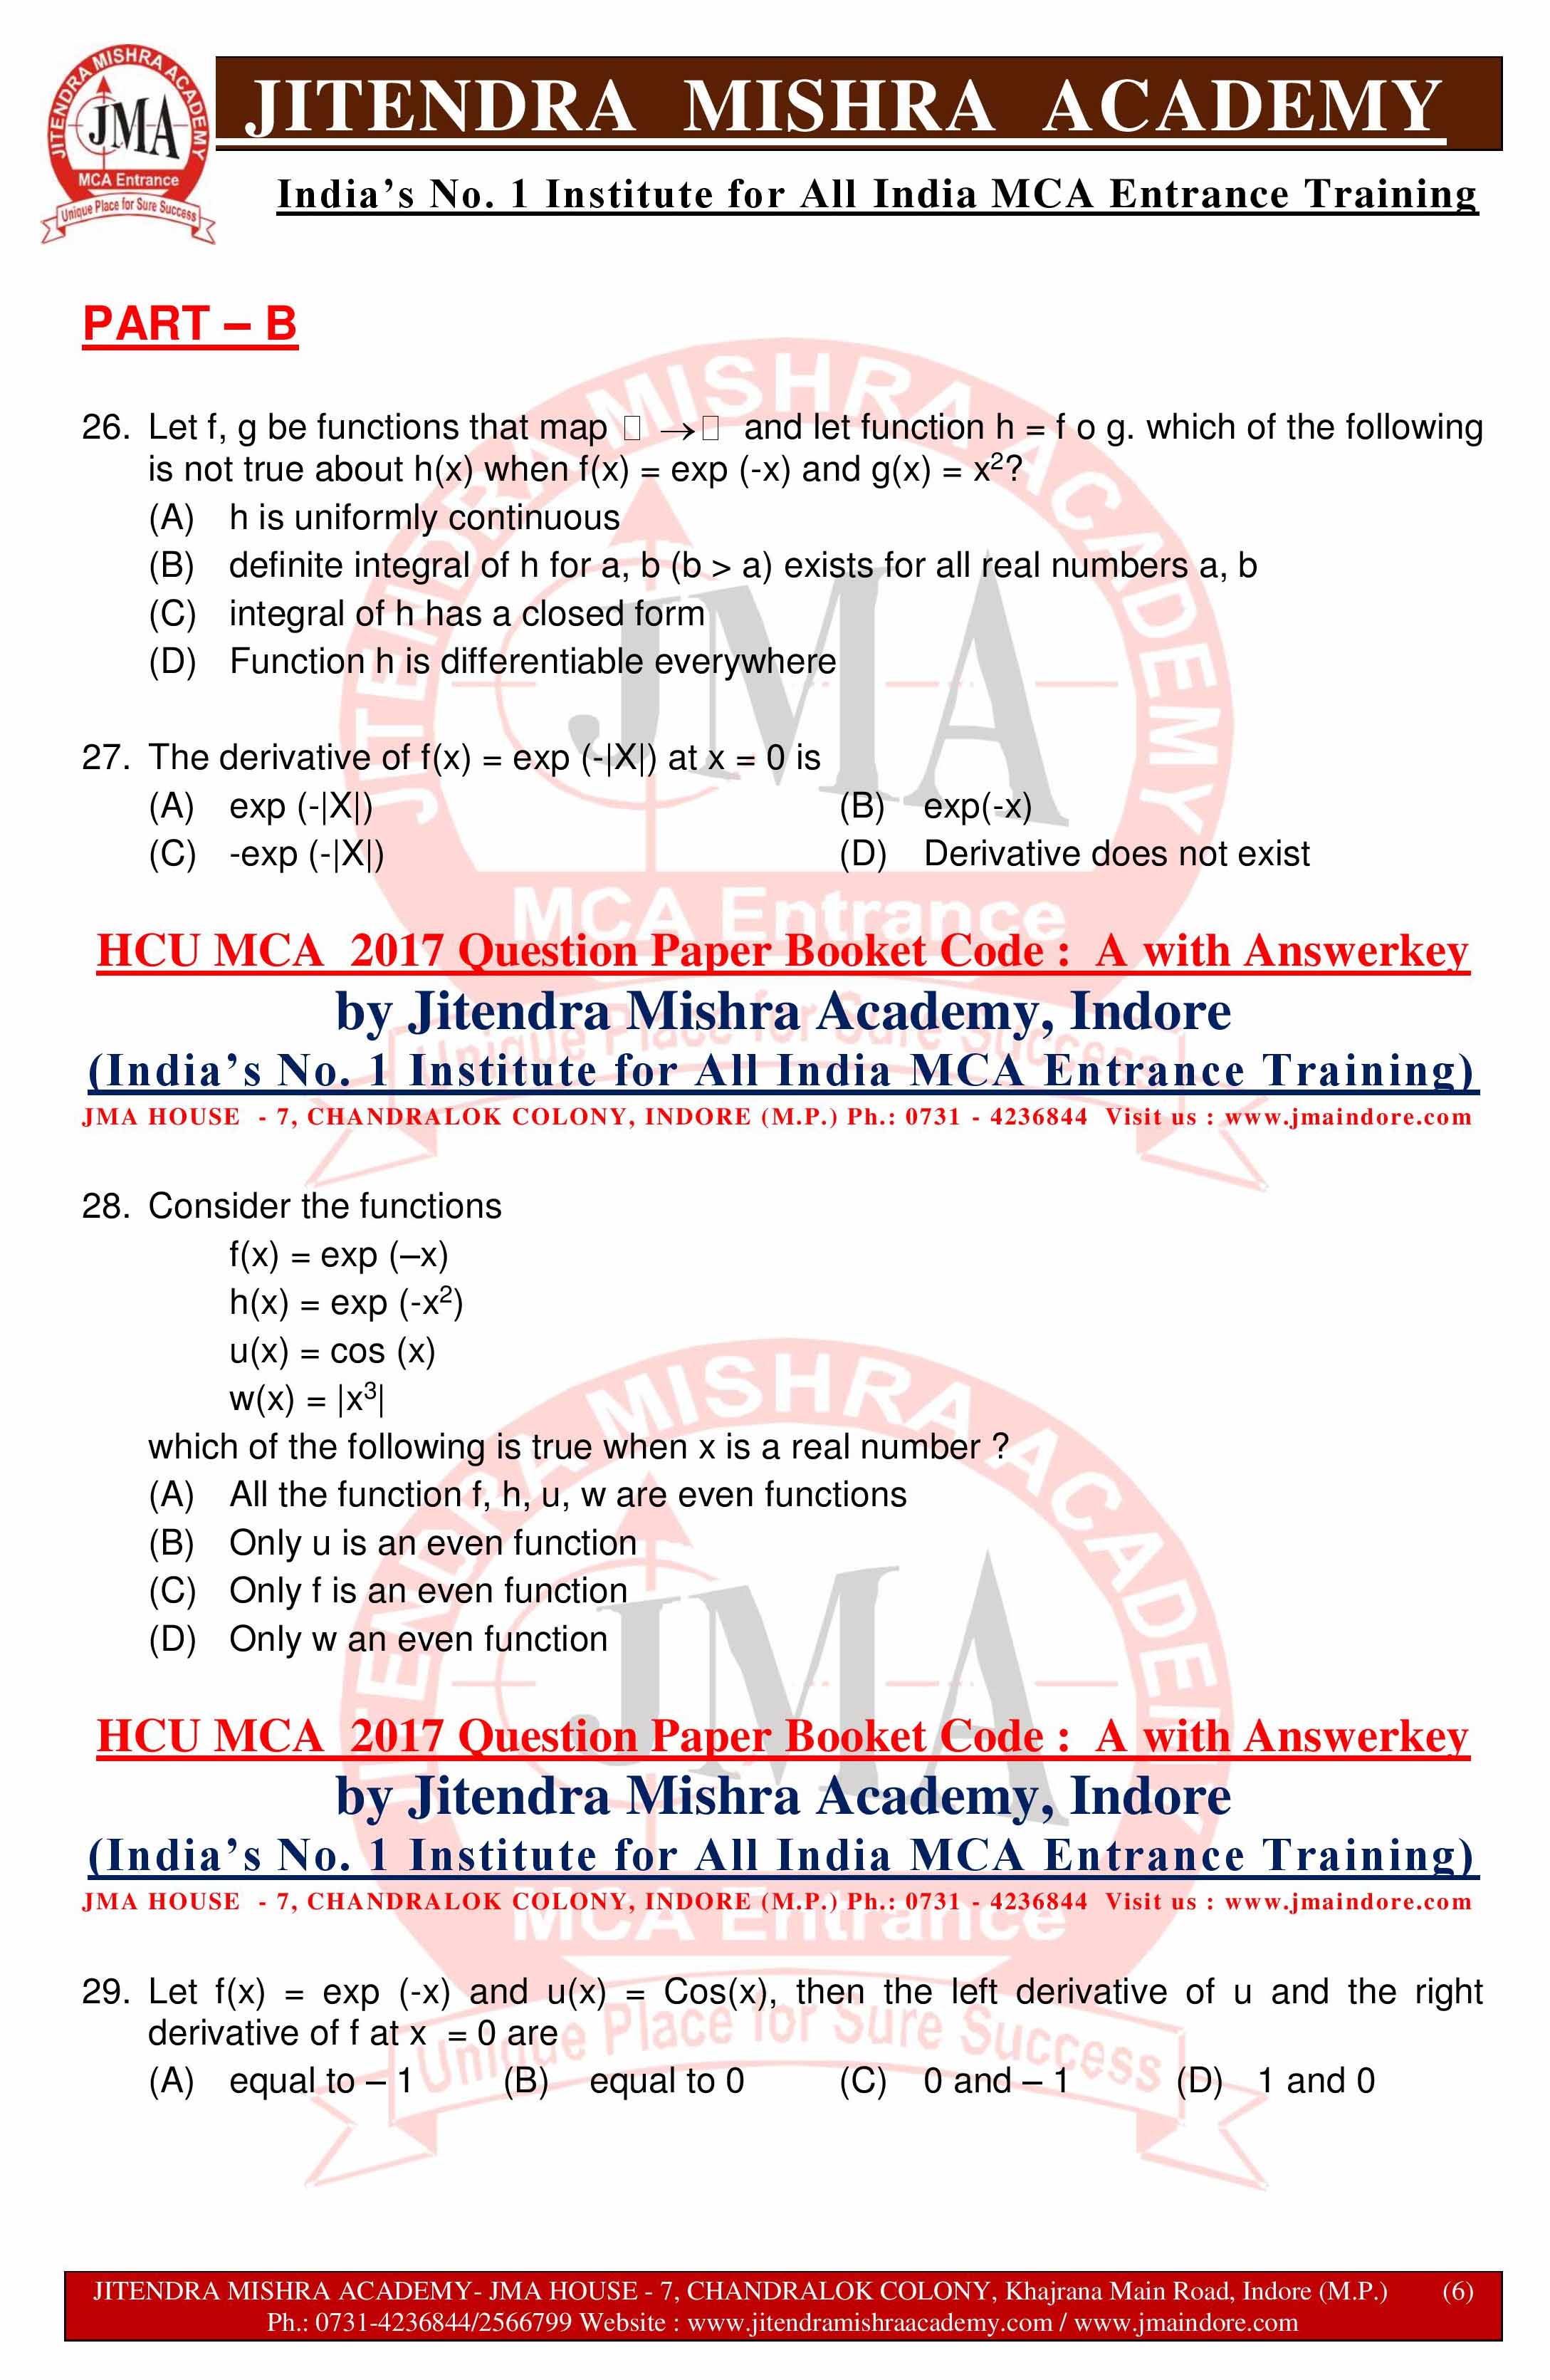 HCU MCA 2017 QUESTION PAPER -SET - A--page-006